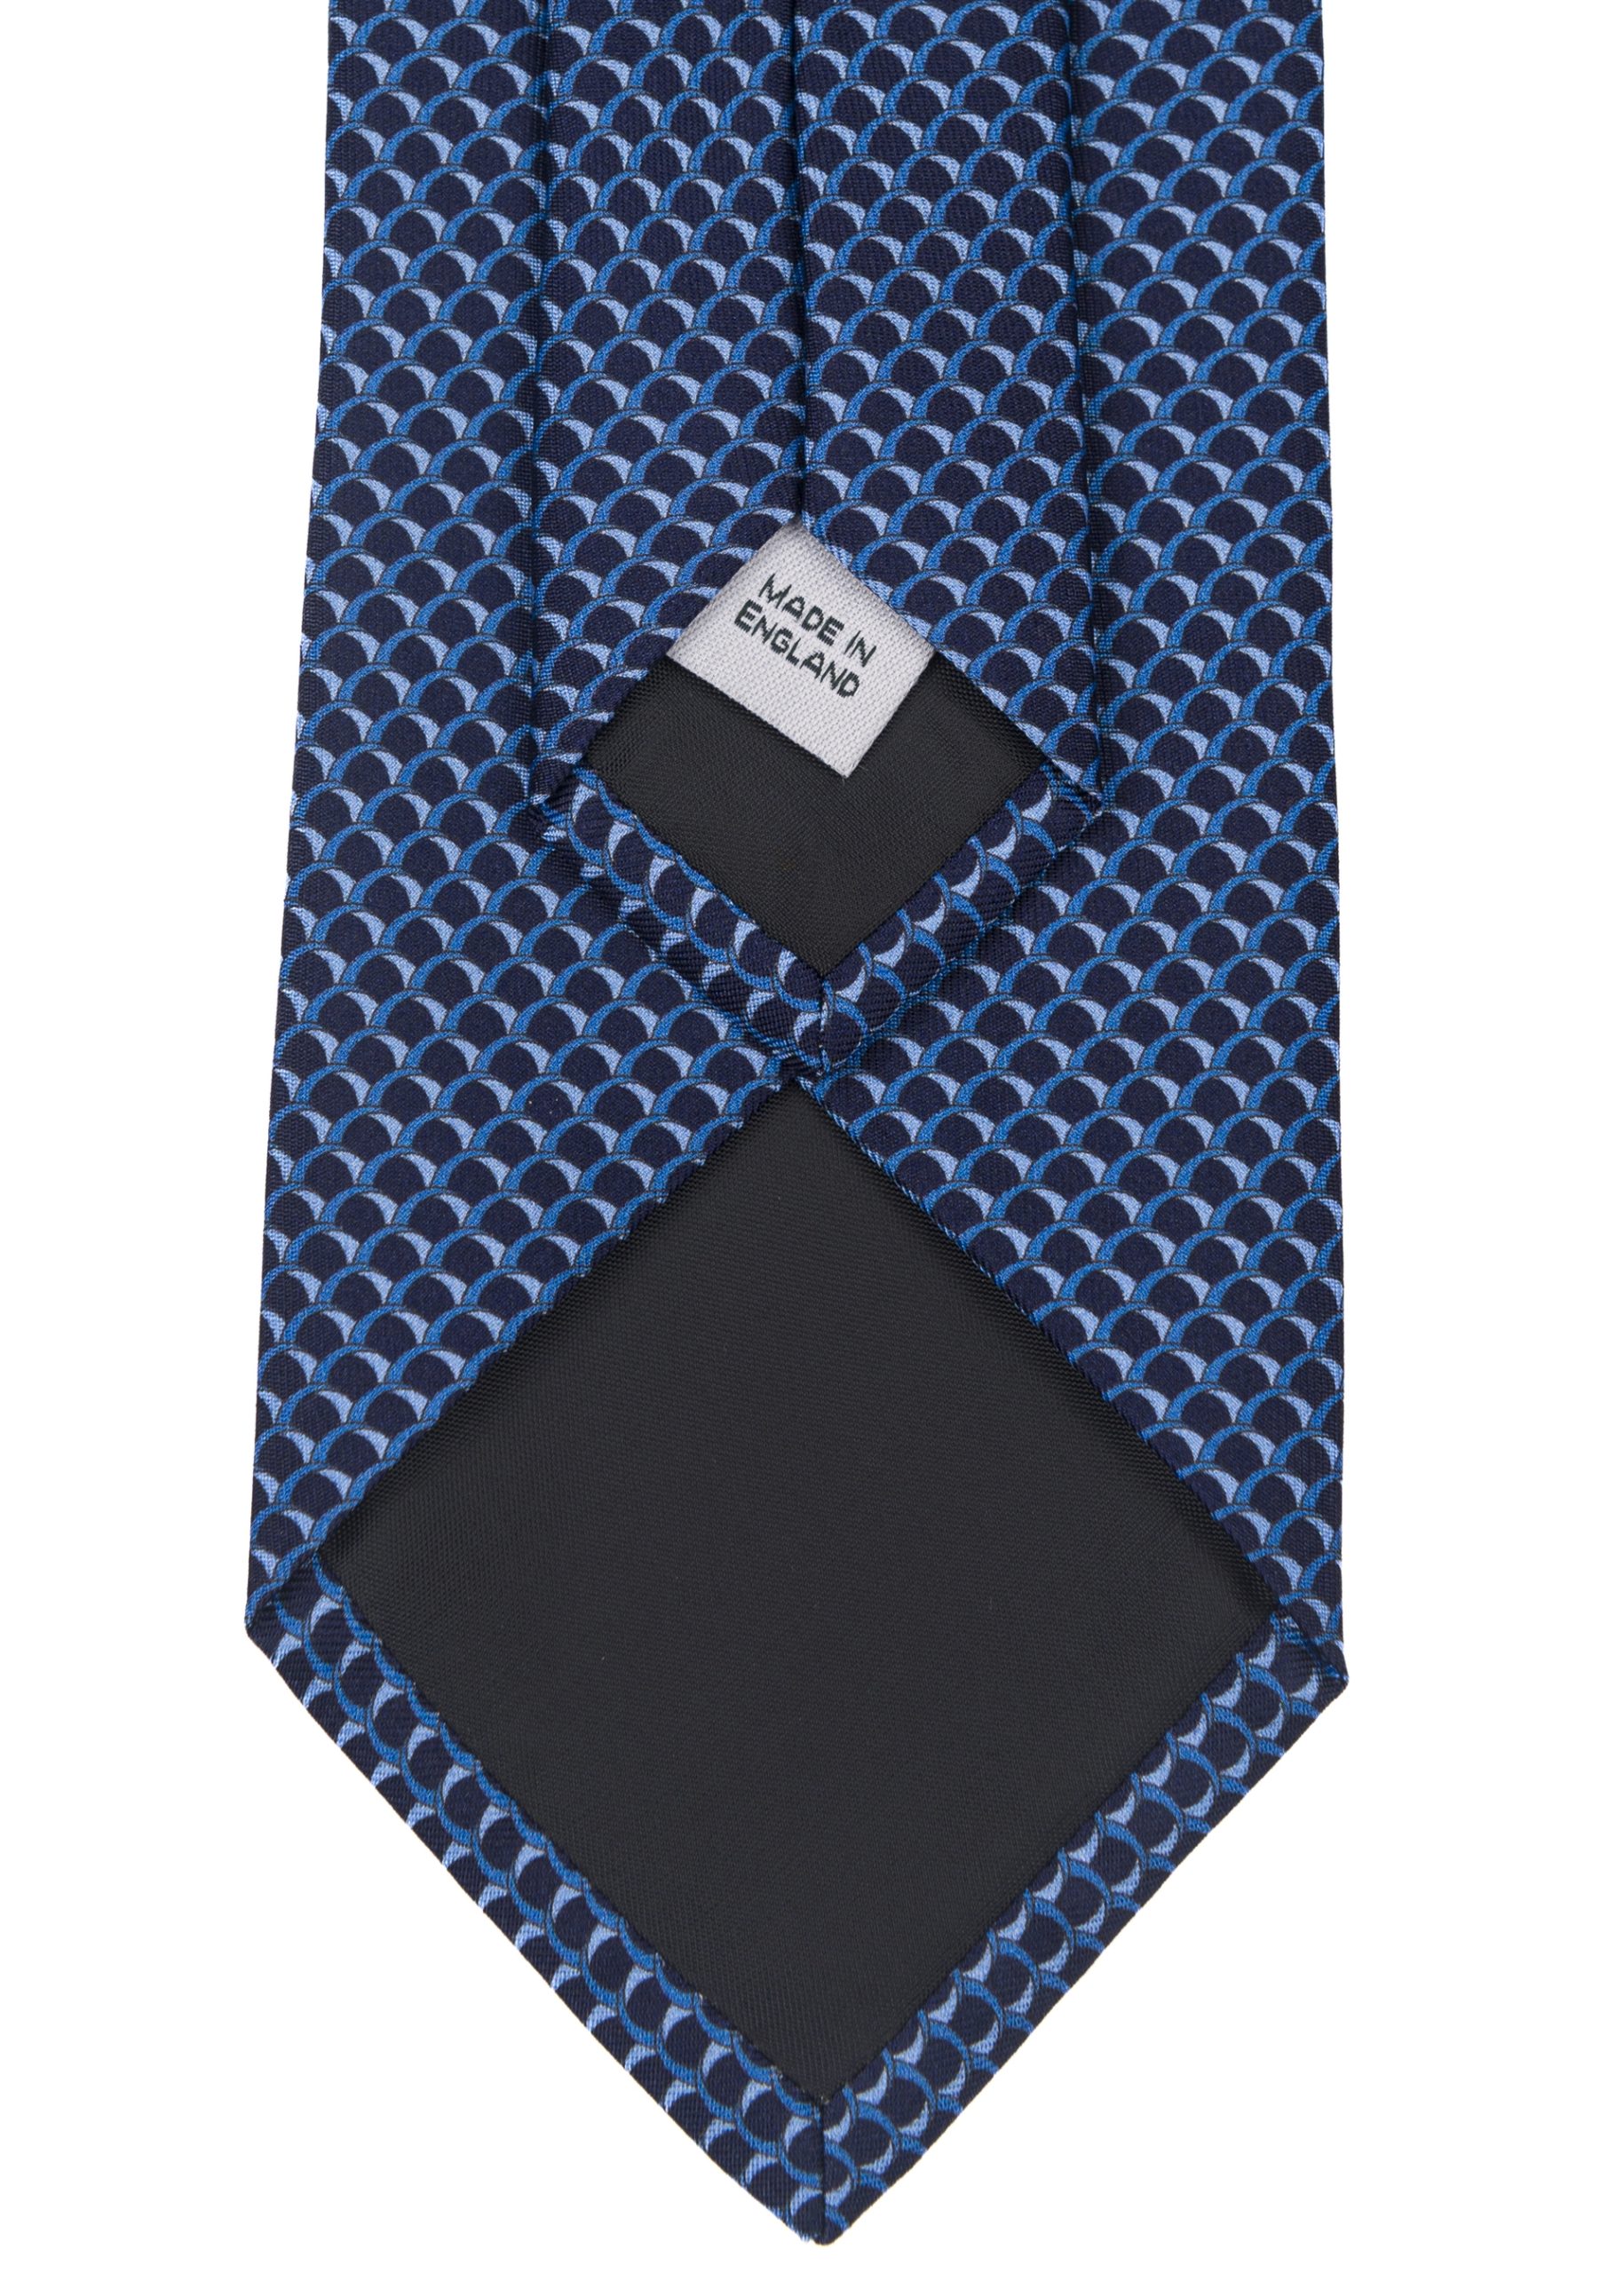 Men’s formal business patterned tie